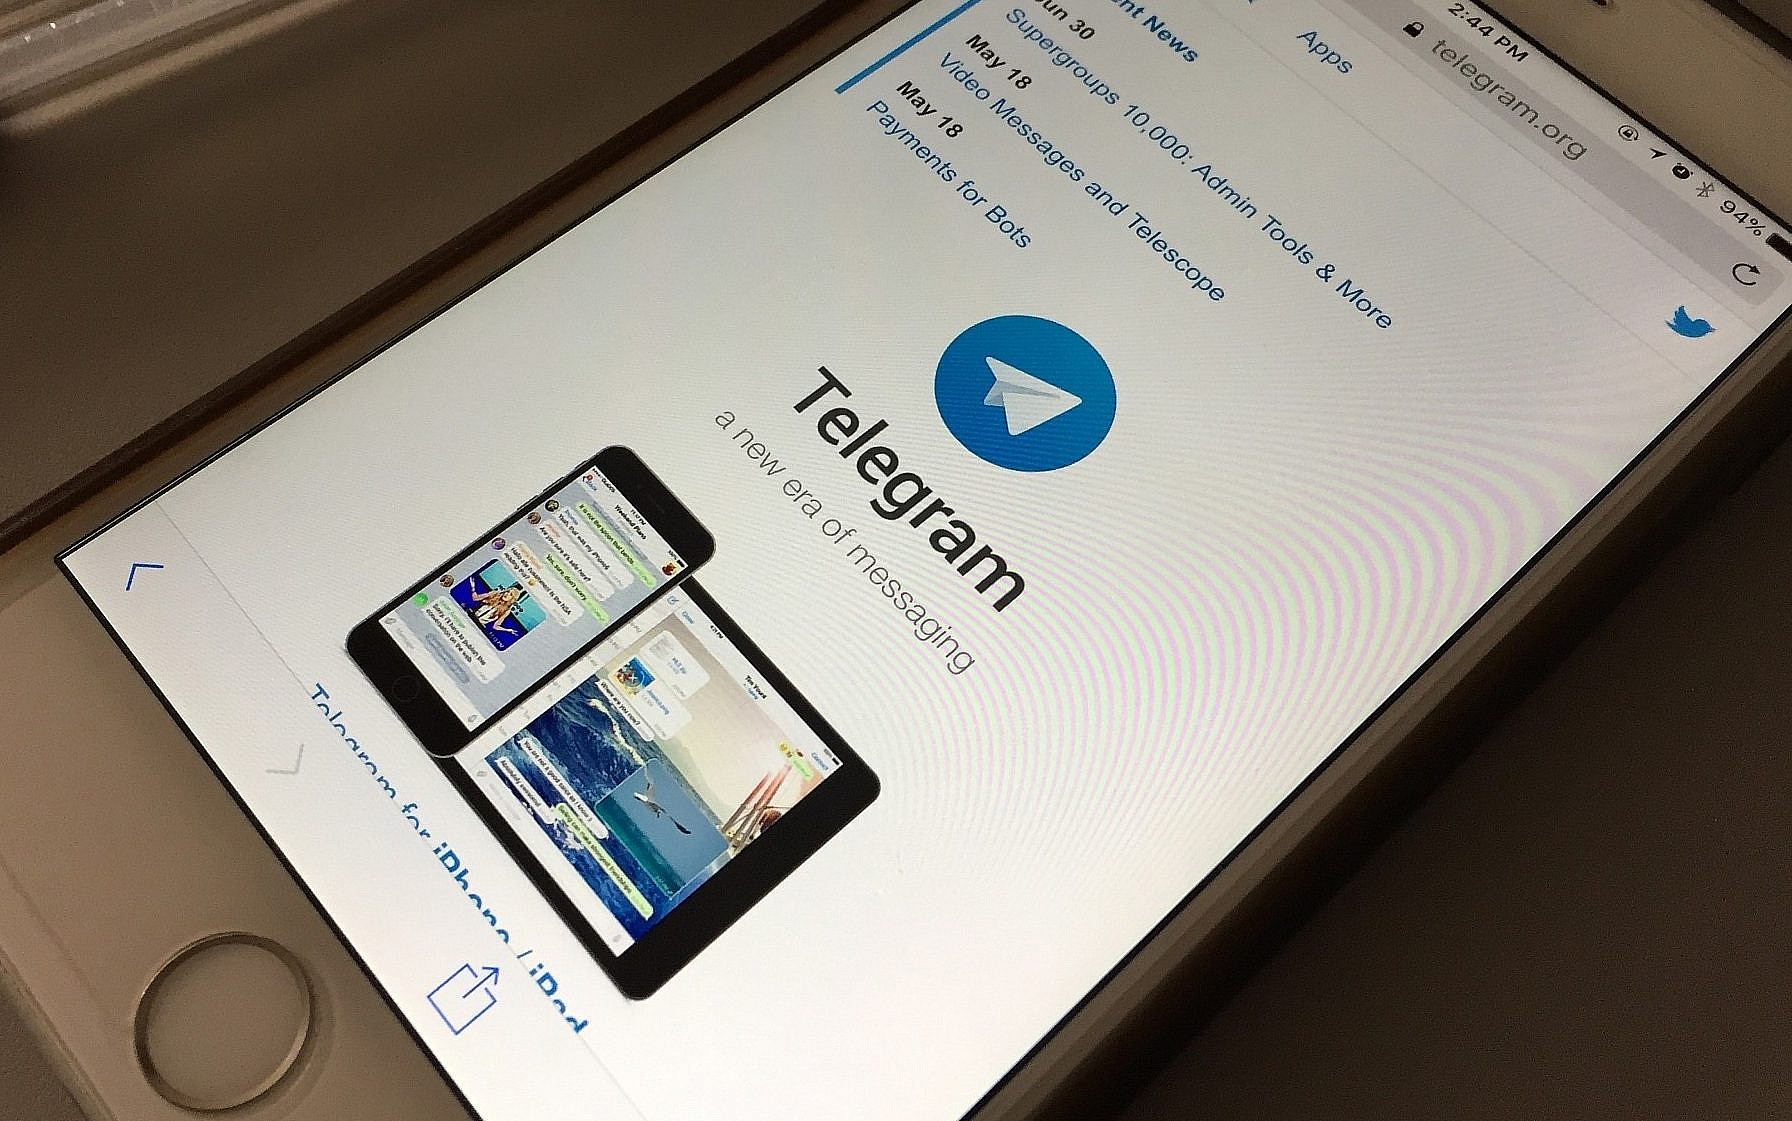 احتمال ممنوعیت تلگرام در آلمان بخاطر انتشار محتوای ضد واکسن